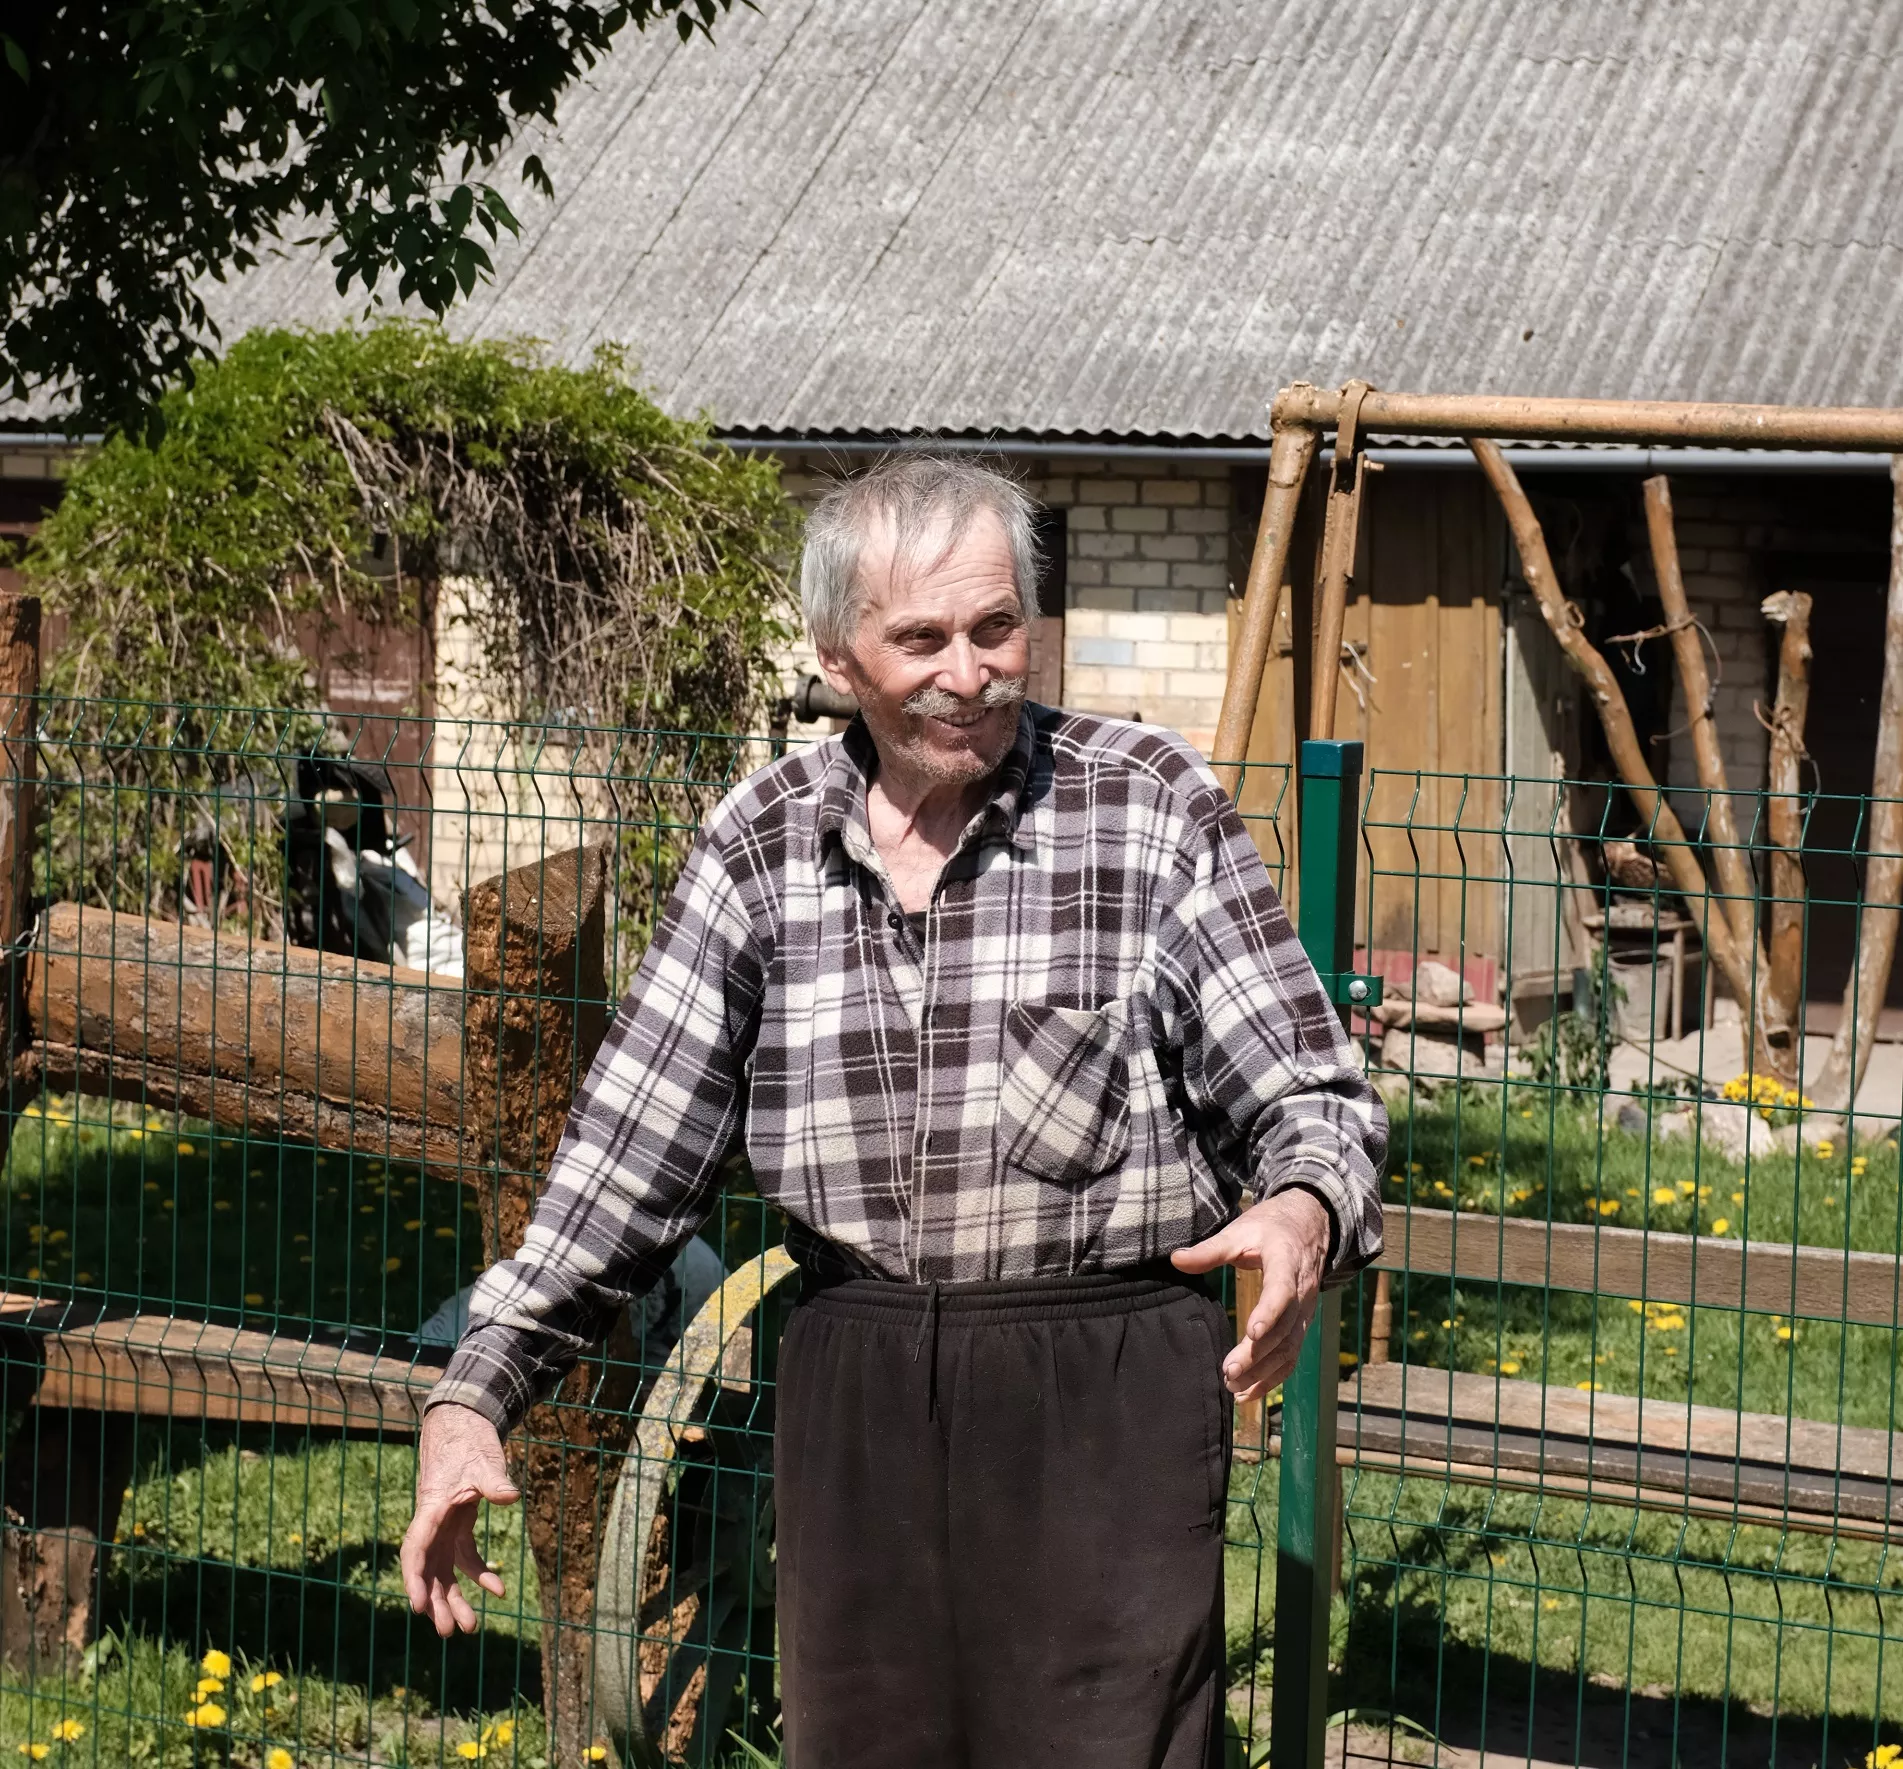 Vladas yra prisidėjęs kone prie kiekvieno ankstesnio kaimo namelio statybos, mat visą gyvenimą ir dirbo statybininku. A. Kasparavičiaus nuotr. 